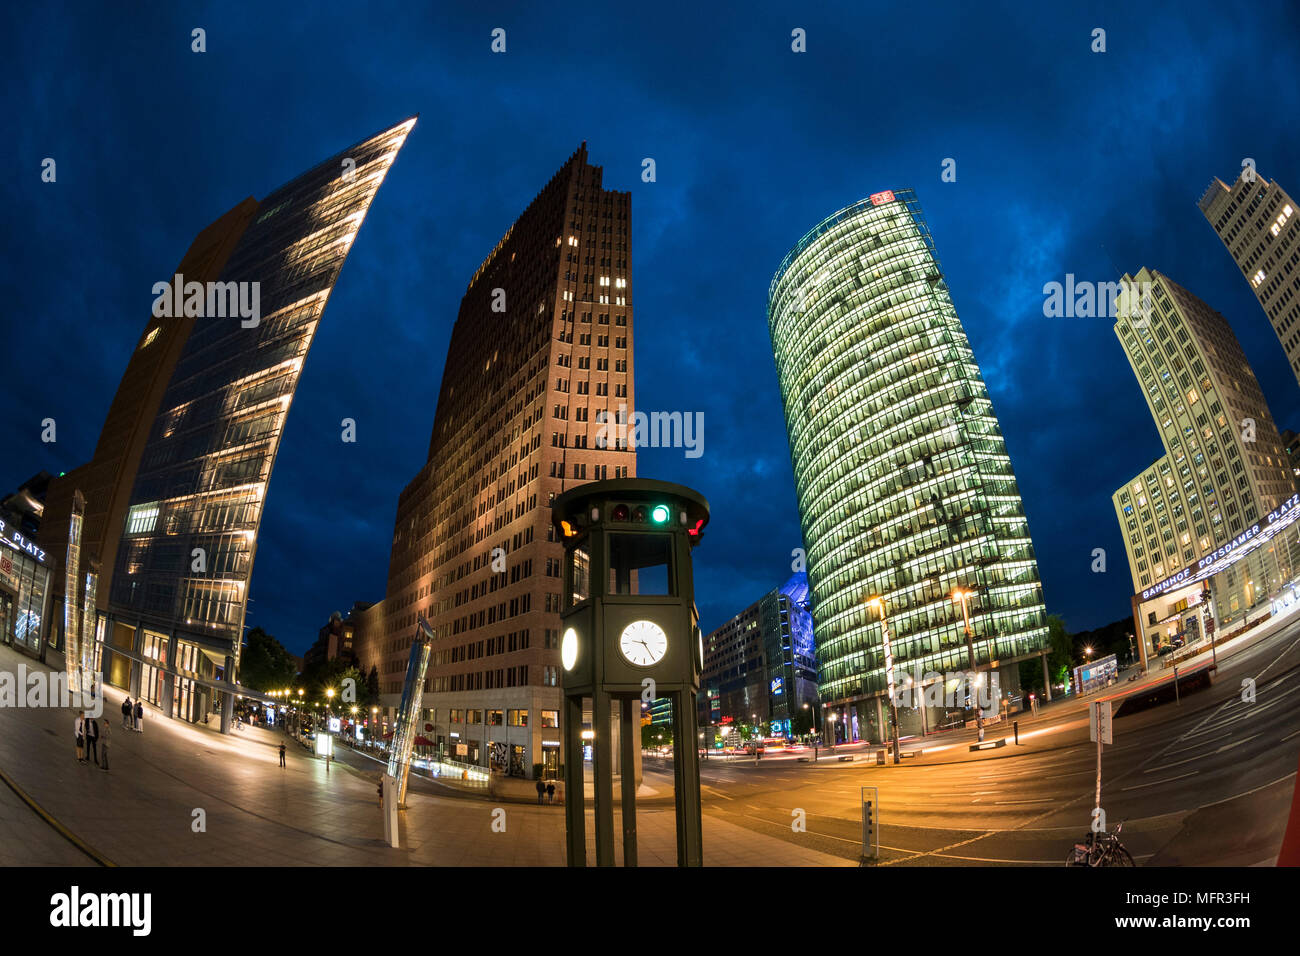 Berlino. Germania. Potsdamer Platz, fisheye vista notturna di grattacieli e la replica del traffico storica torre faro / orologio, progettata da Jean Krämer, un Foto Stock